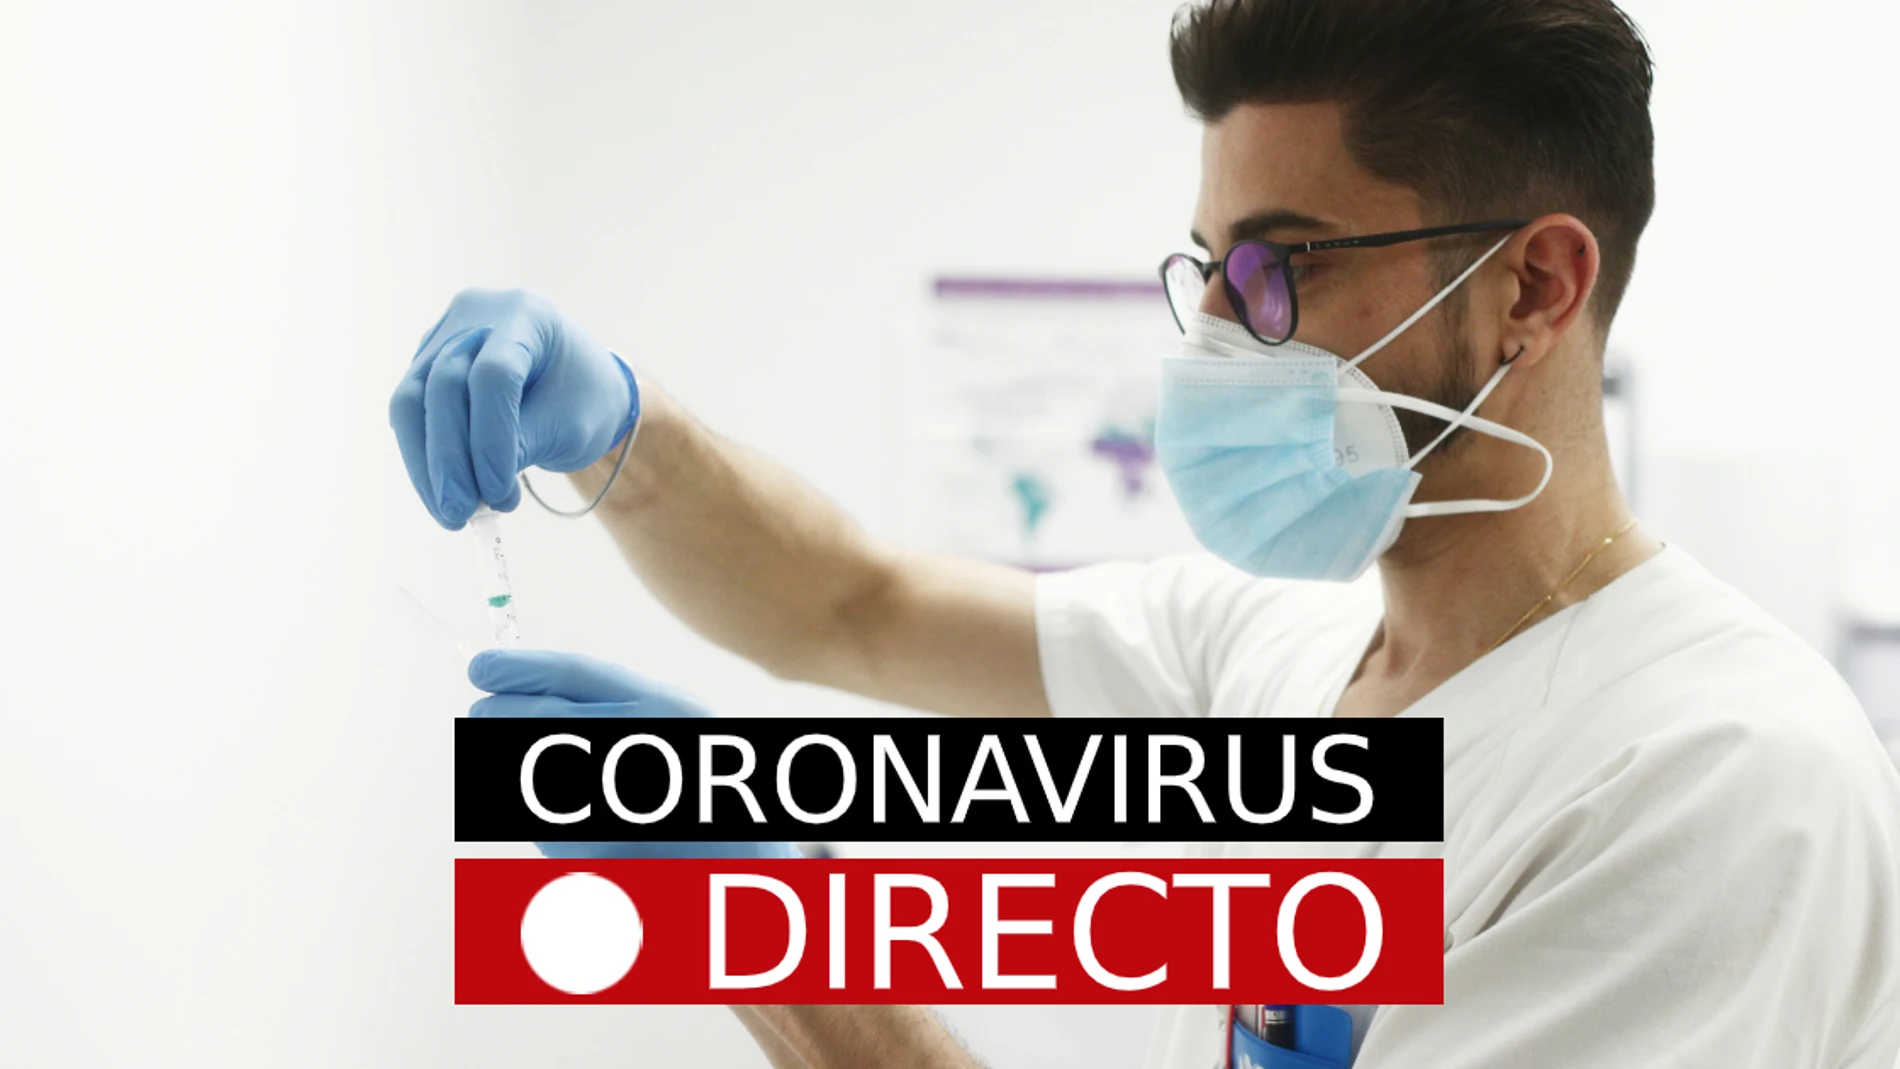 Restricciones por COVID-19, hoy | Nuevas medidas por coronavirus y confinamiento en zonas básicas de salud en Madrid, en directo